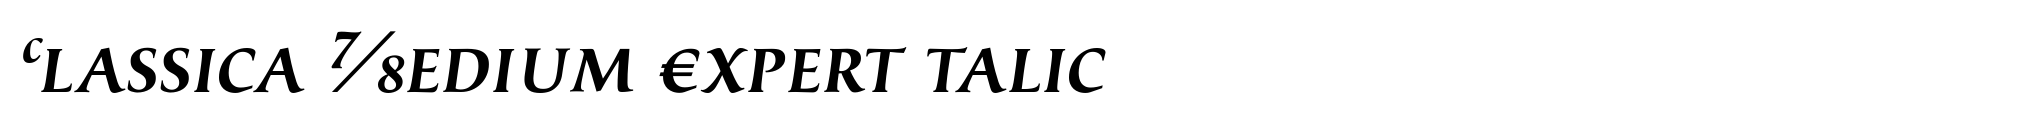 Classica Medium Expert talic image